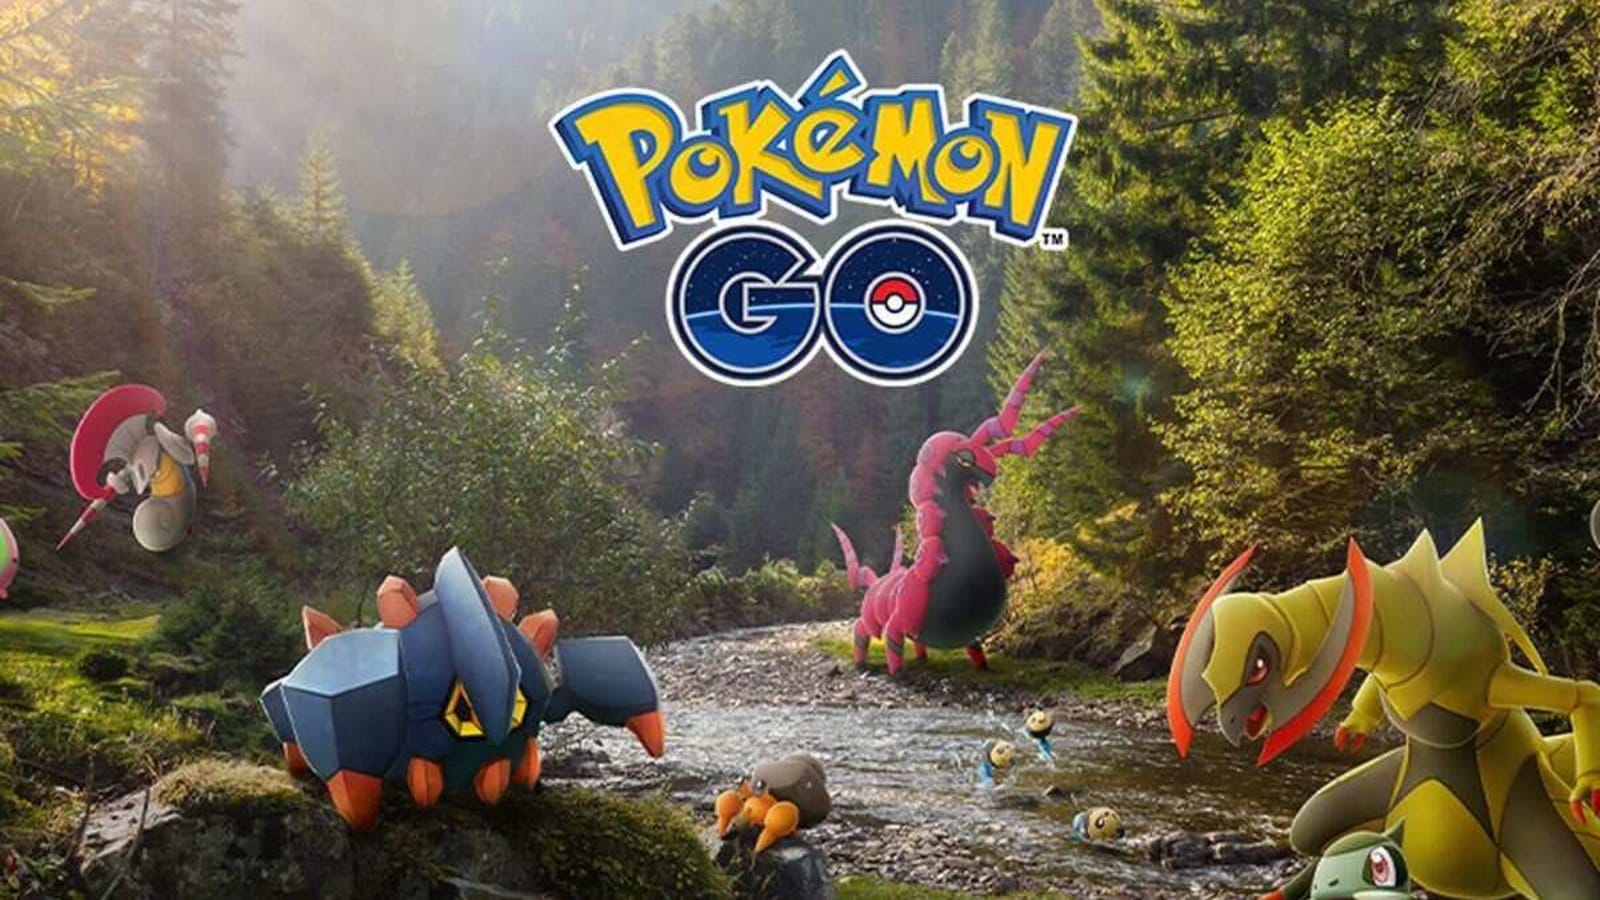 Video Game Pokémon GO HD Wallpaper